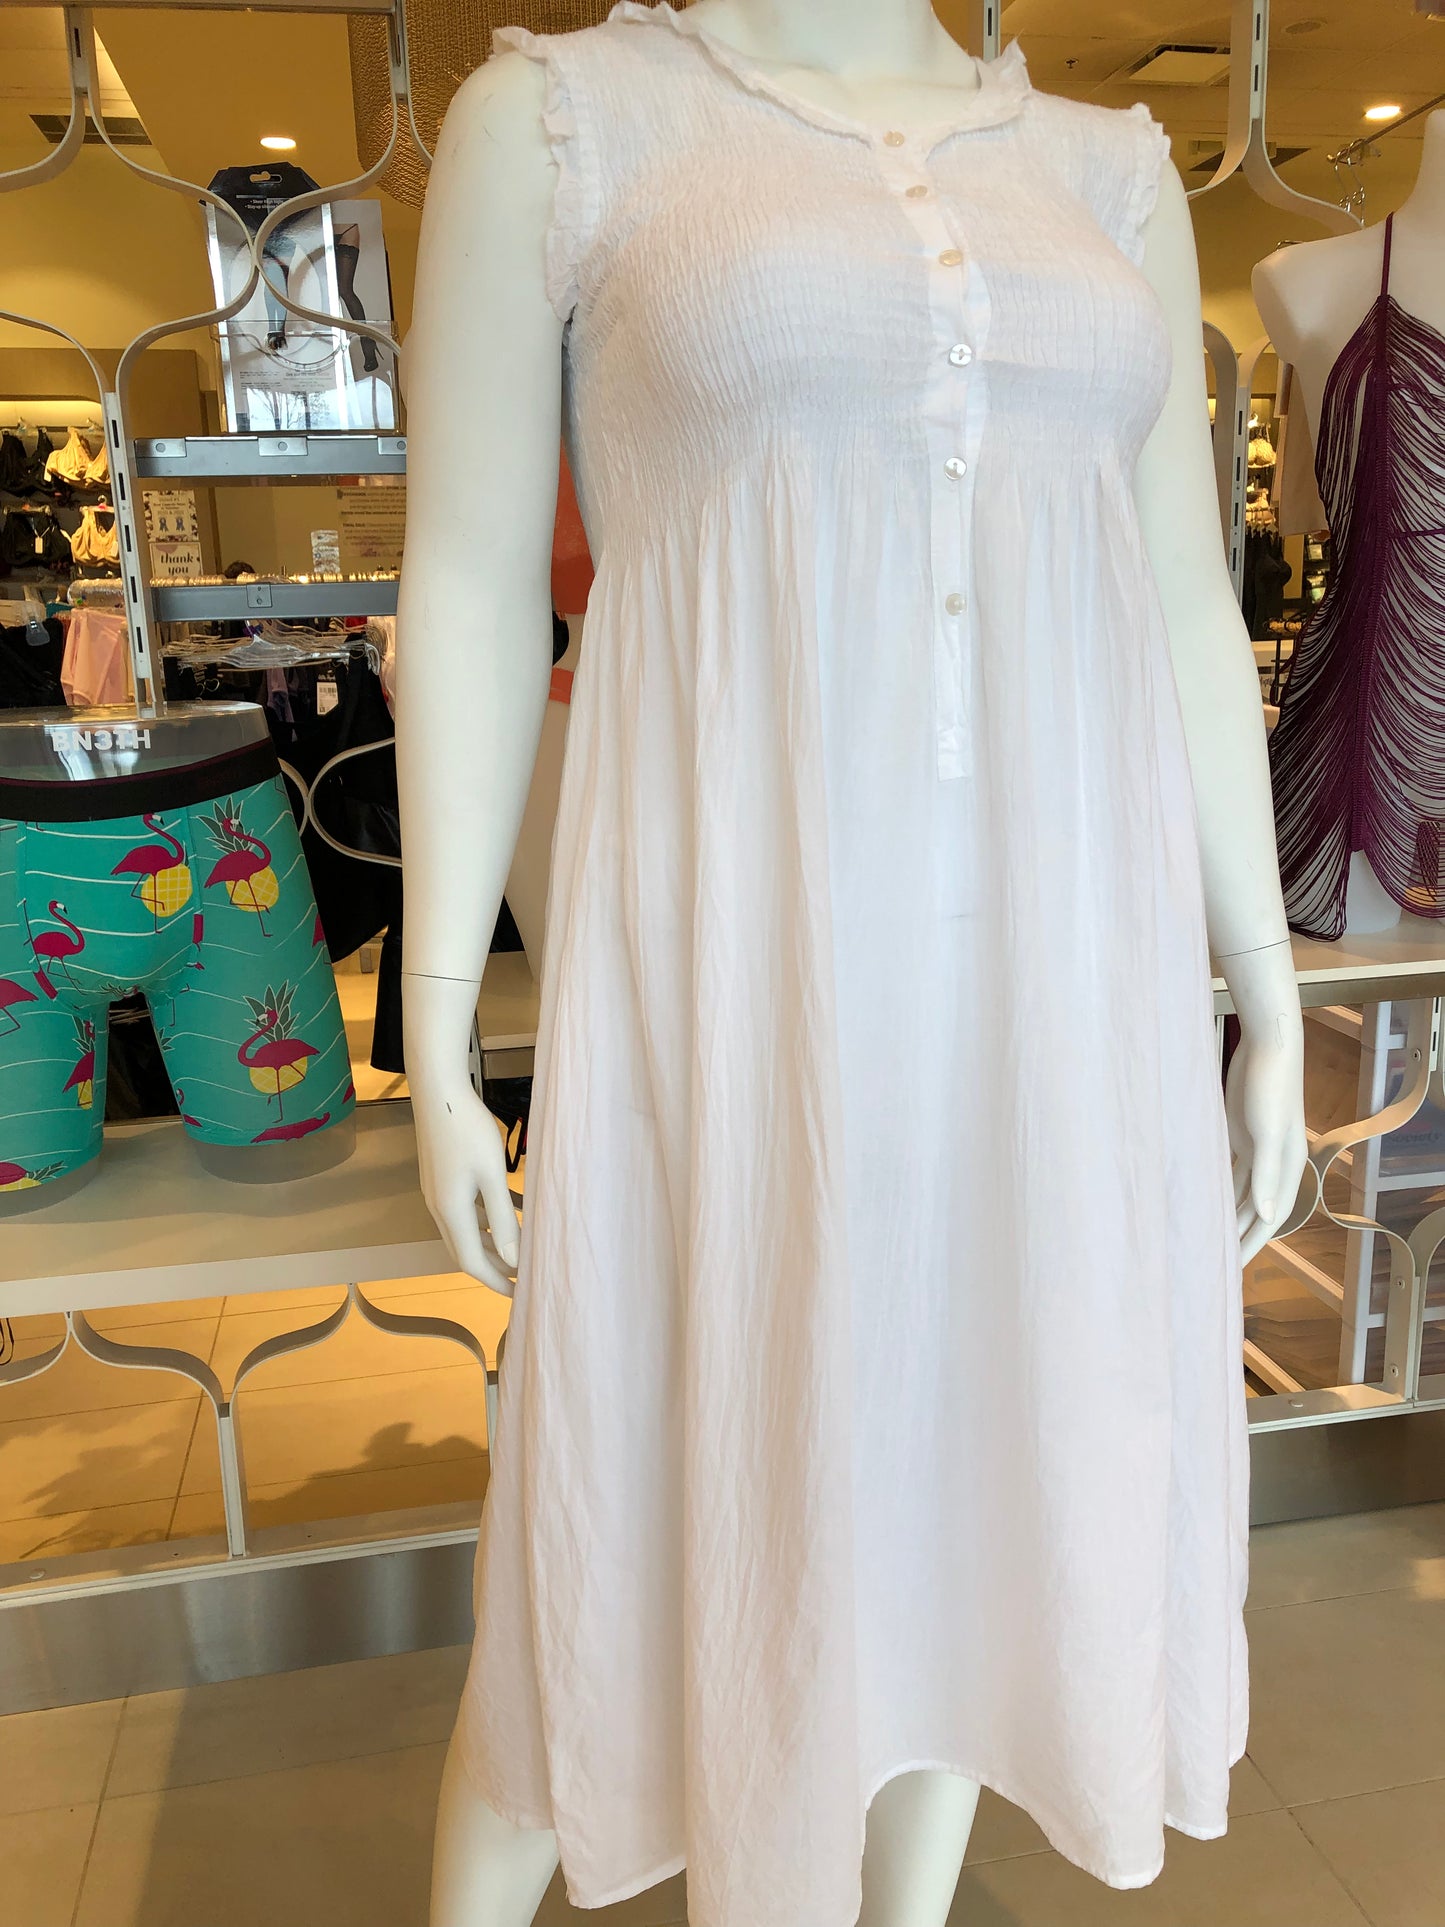 100% Cotton Sleeveless Smocked Nightgown 4256 - White